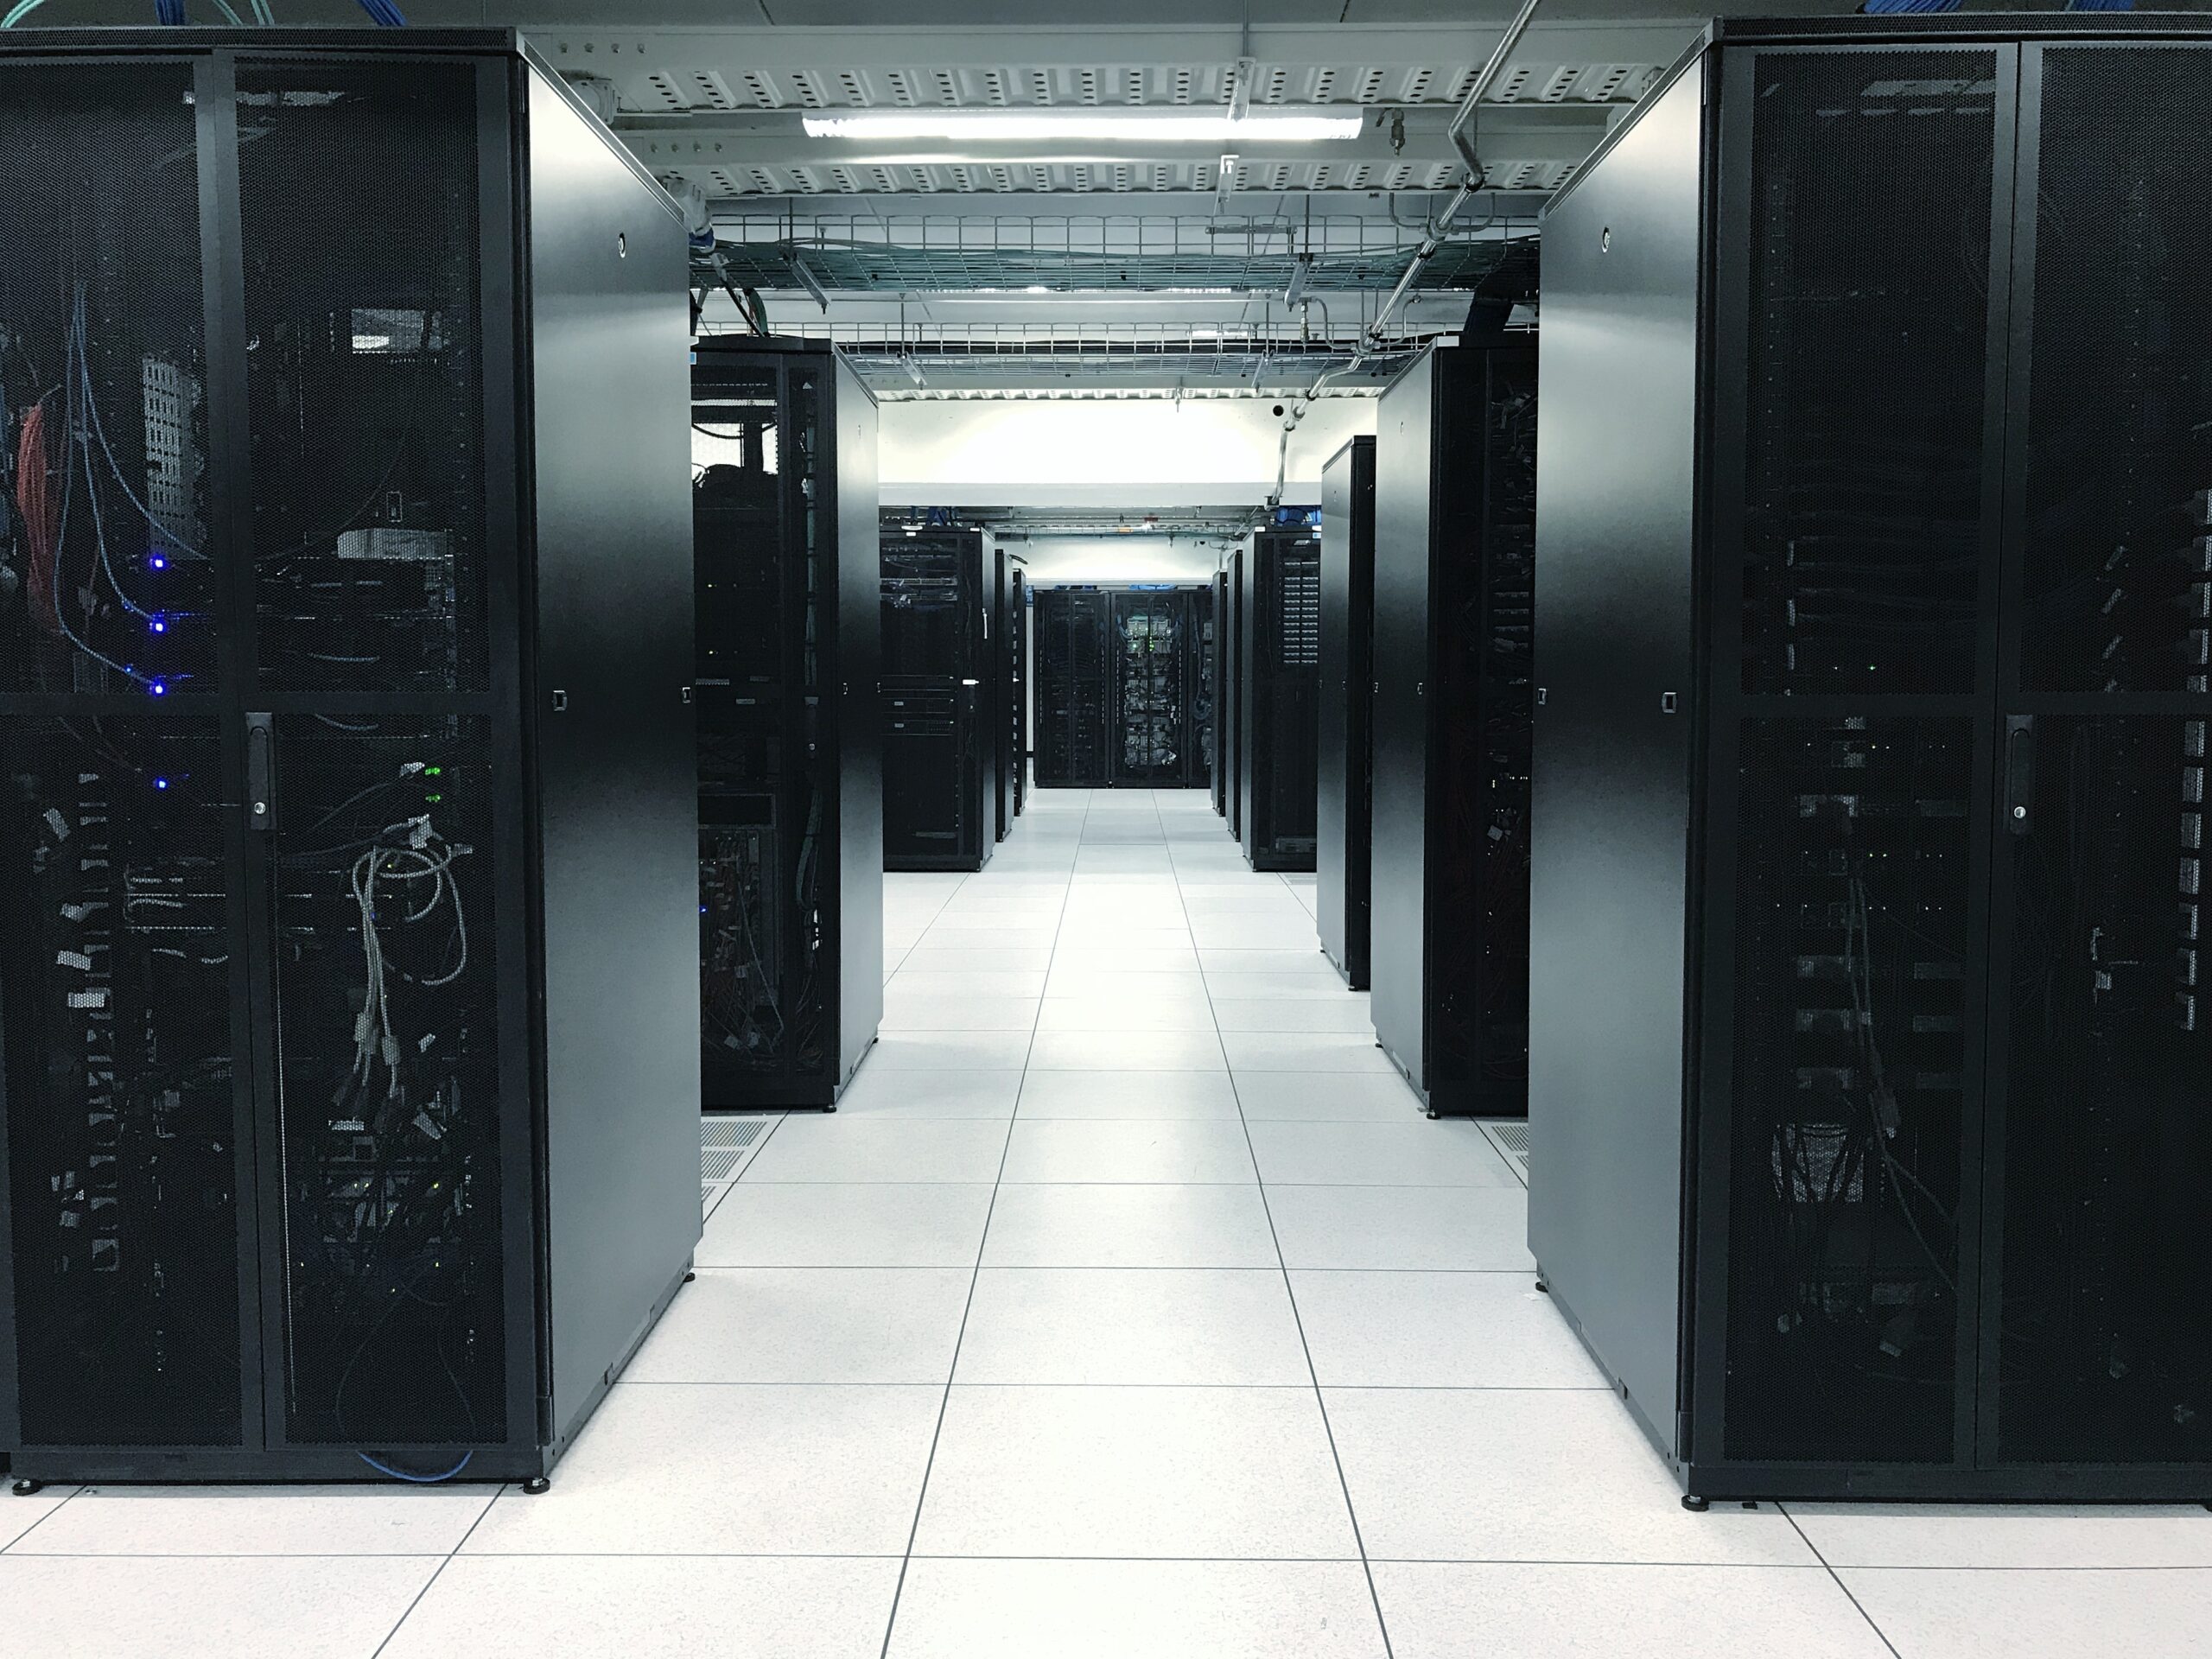 row-of-server-racks-or-network-device-racks-in-data-center-data